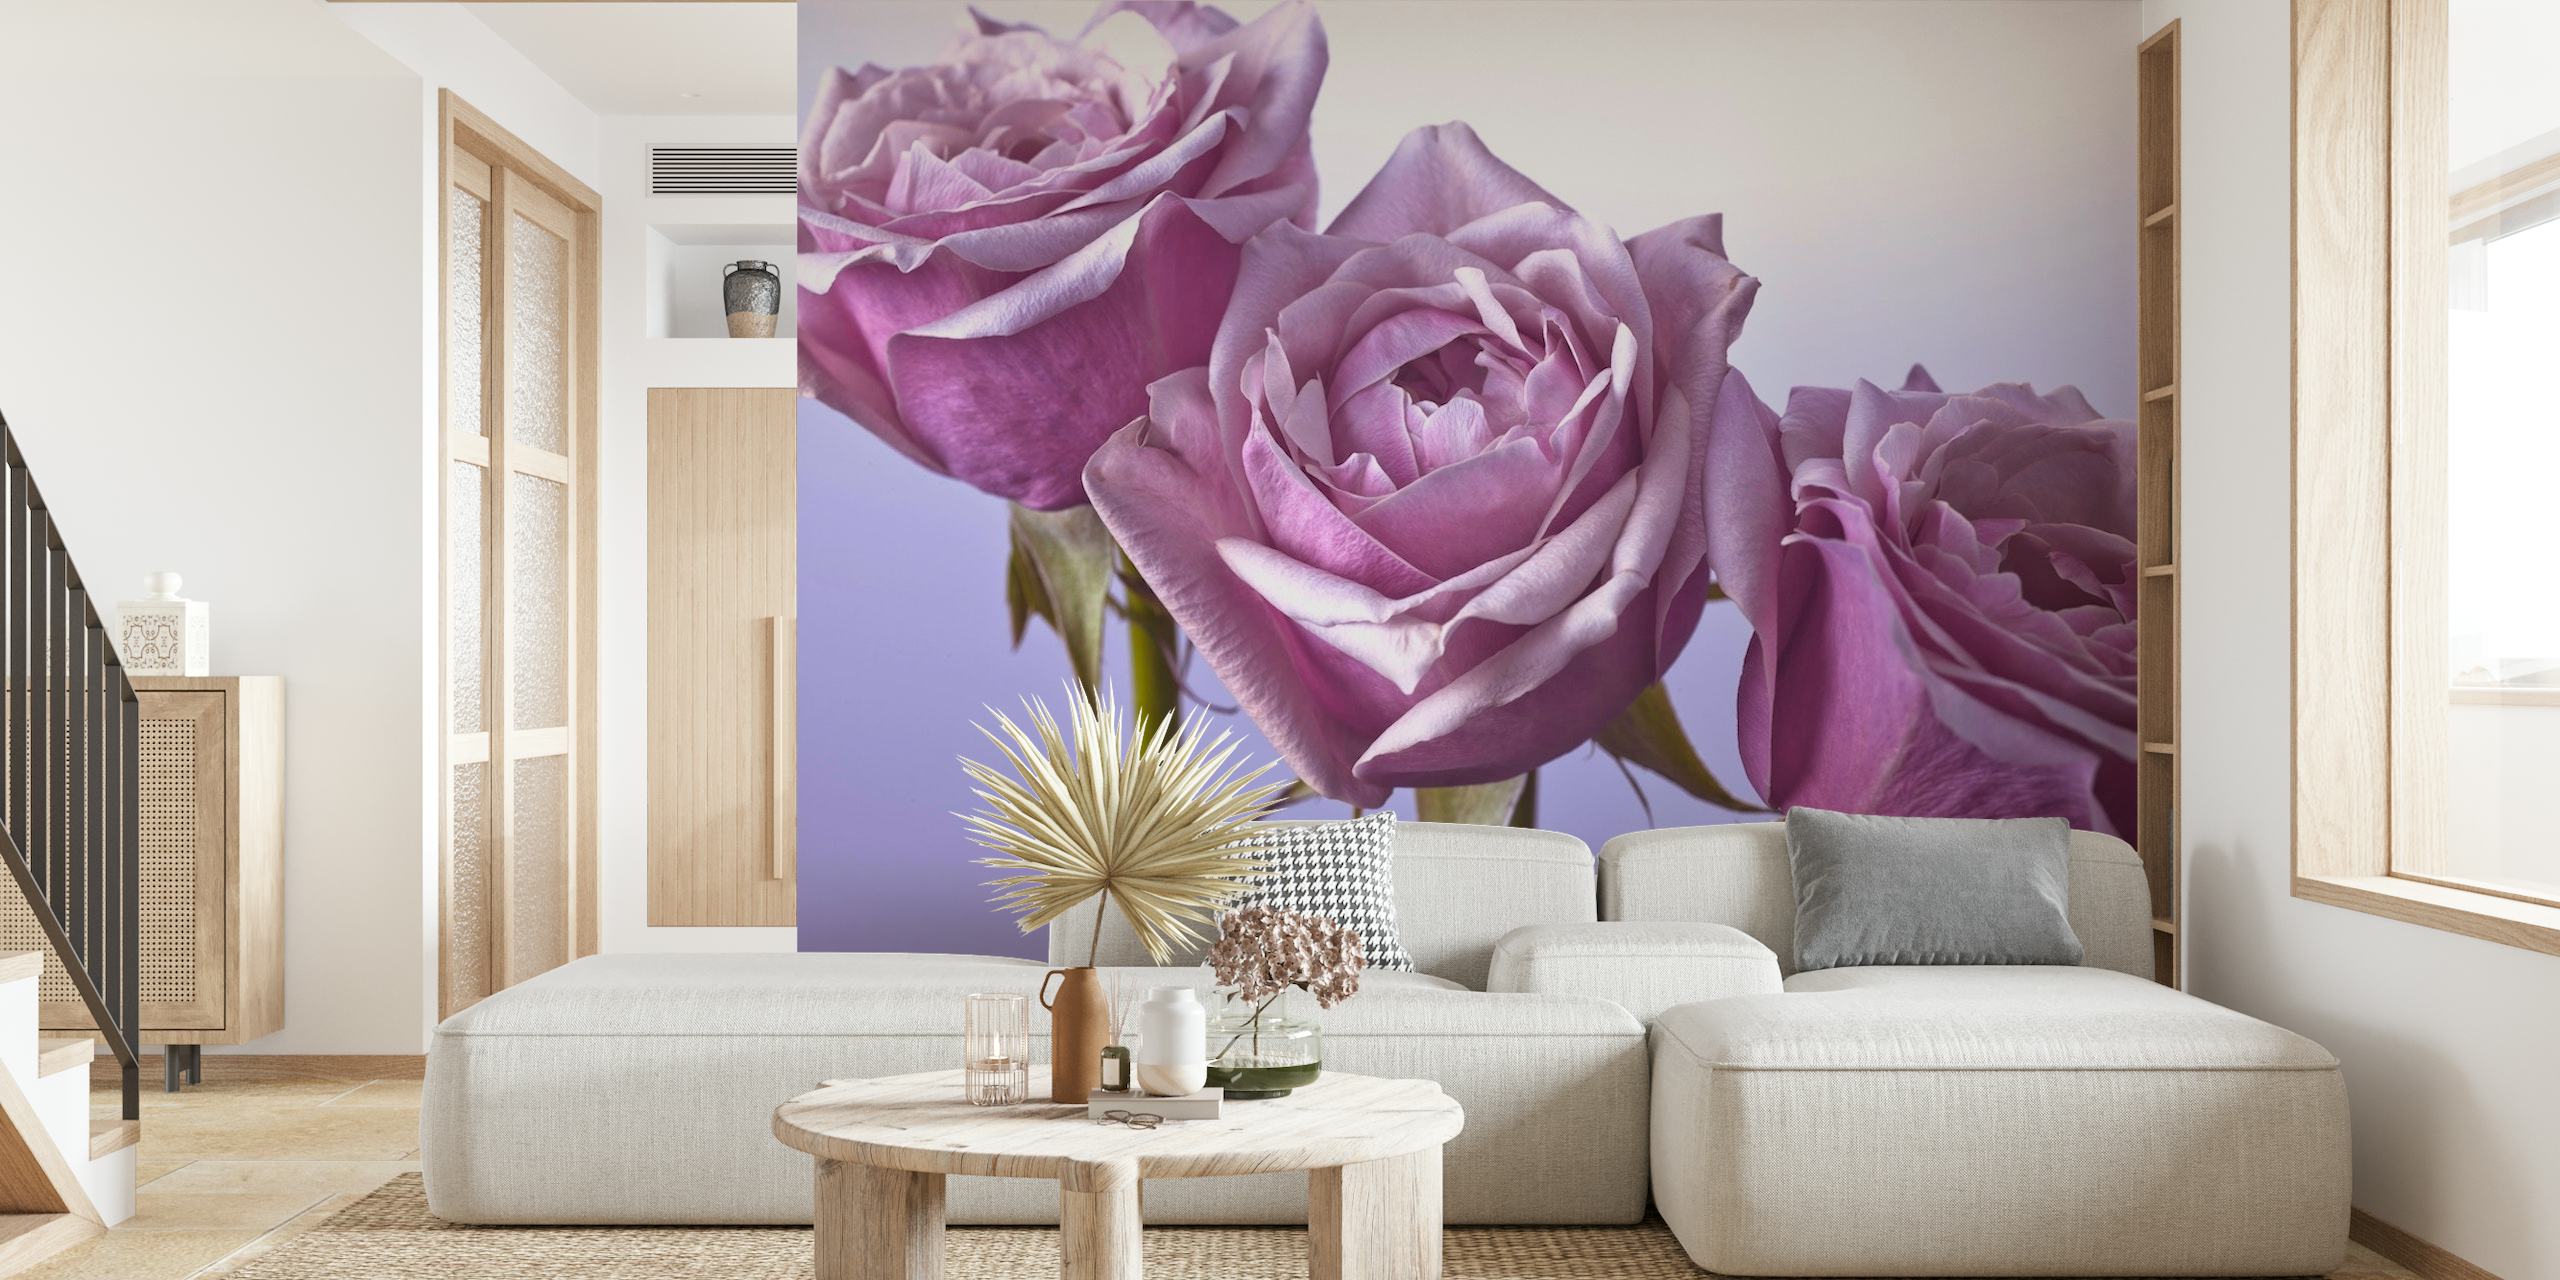 Et detaljeret vægmaleri af tre lilla roser mod en blød baggrund